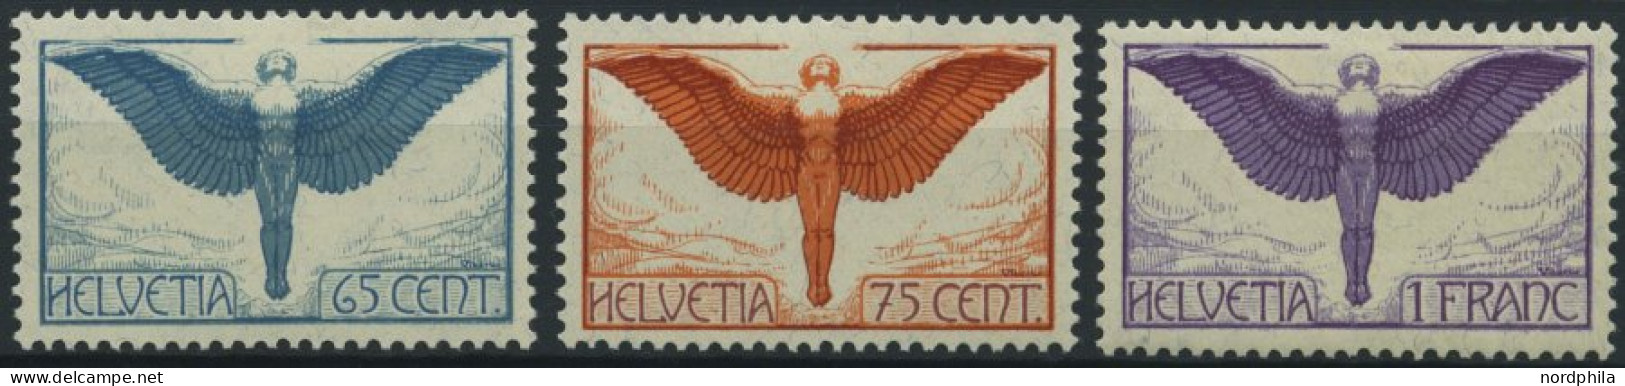 SCHWEIZ BUNDESPOST 189-91x , 1924, Flugpostmarken, Gewöhnliches Papier, Falzrest, Prachtsatz - Ongebruikt